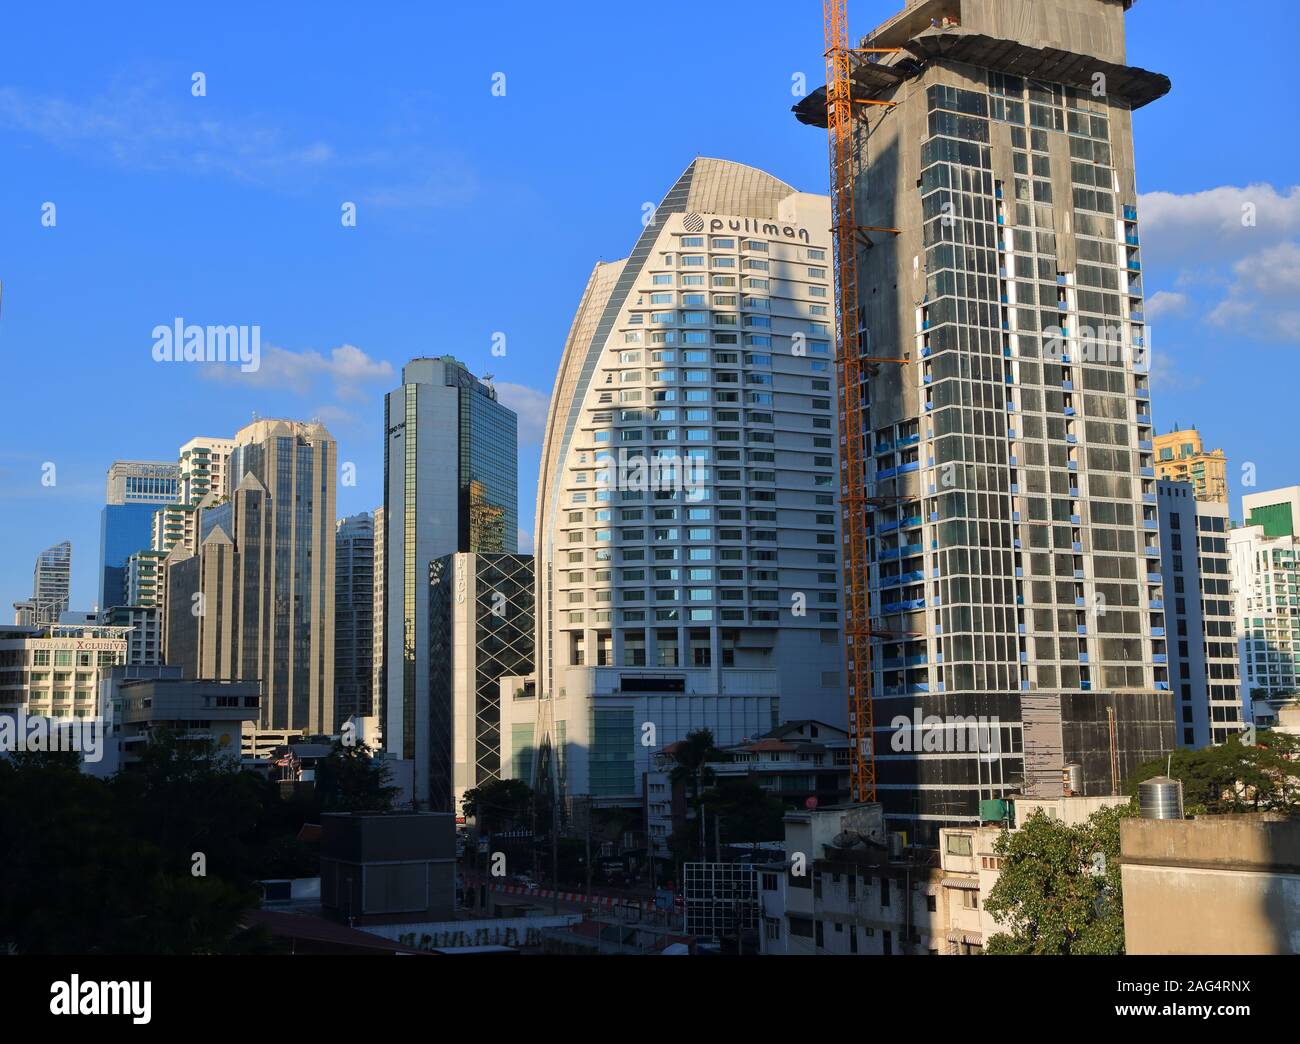 Bangkok, Thaïlande - 16 décembre 2019 : Cityscape at montre asoke sukhumvit hotel Pullman à côté du bâtiment en construction amomg beaucoup de gratte-ciel Banque D'Images